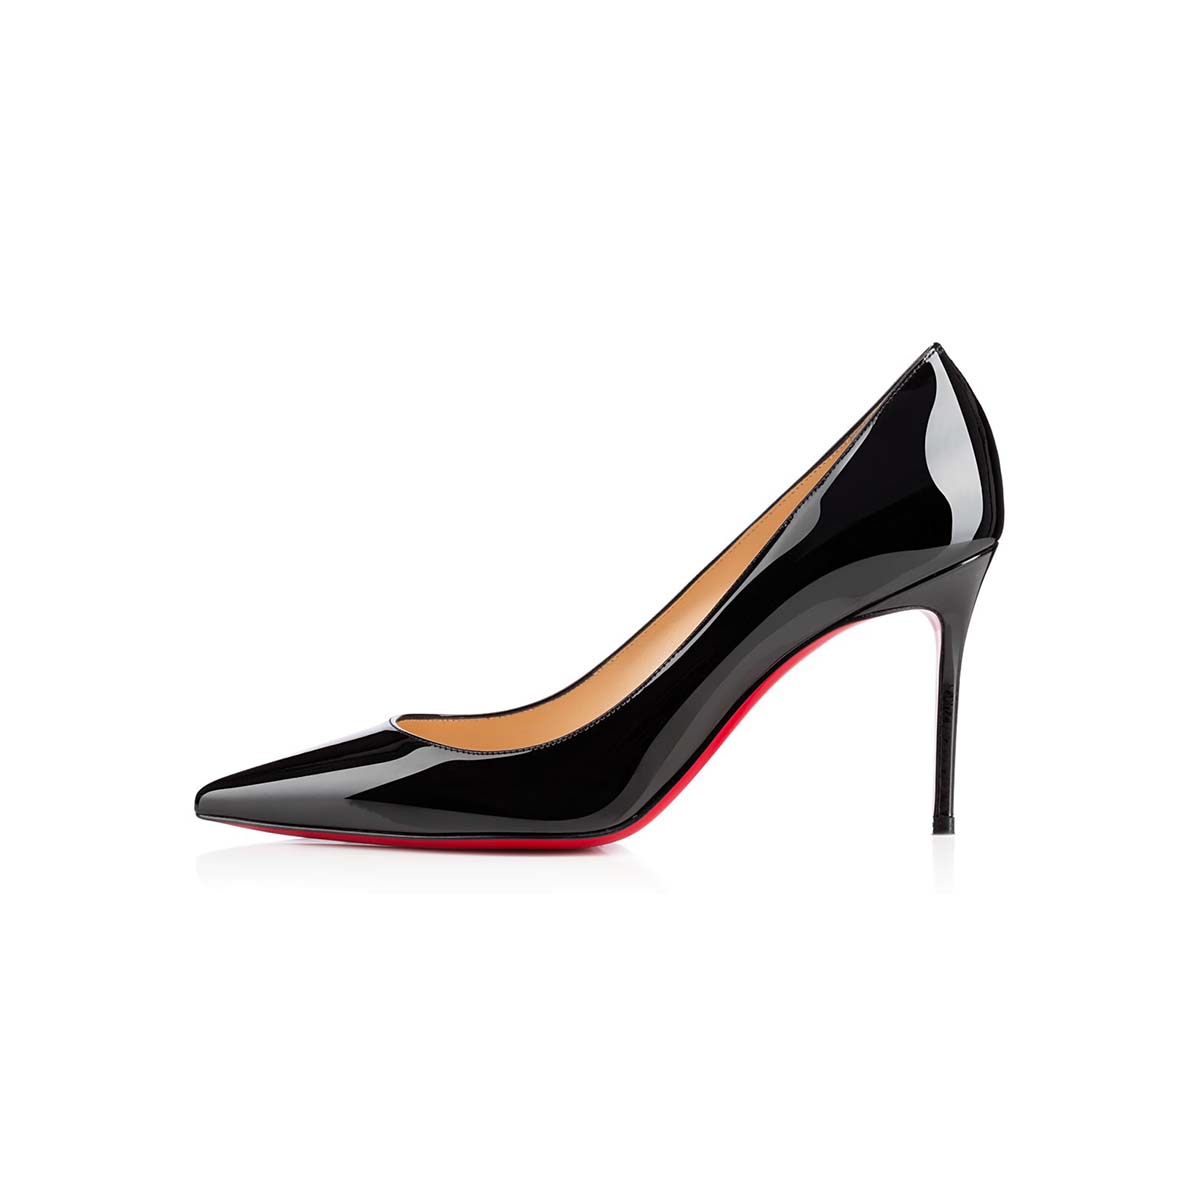 Christian Louboutin Women Decollete 554 Patent 85 mm Pumps Shoes Black